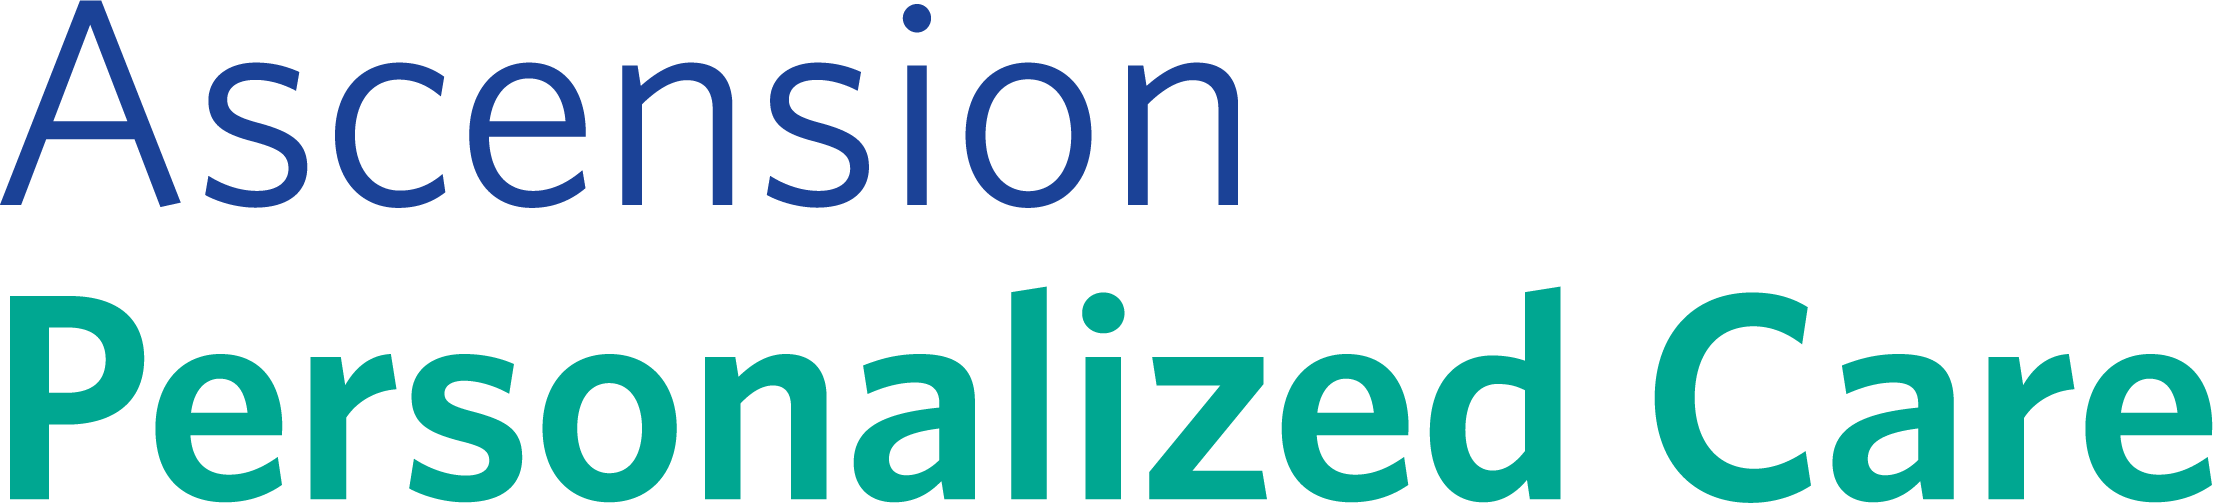 Logotipo de Ascension Personalized Care